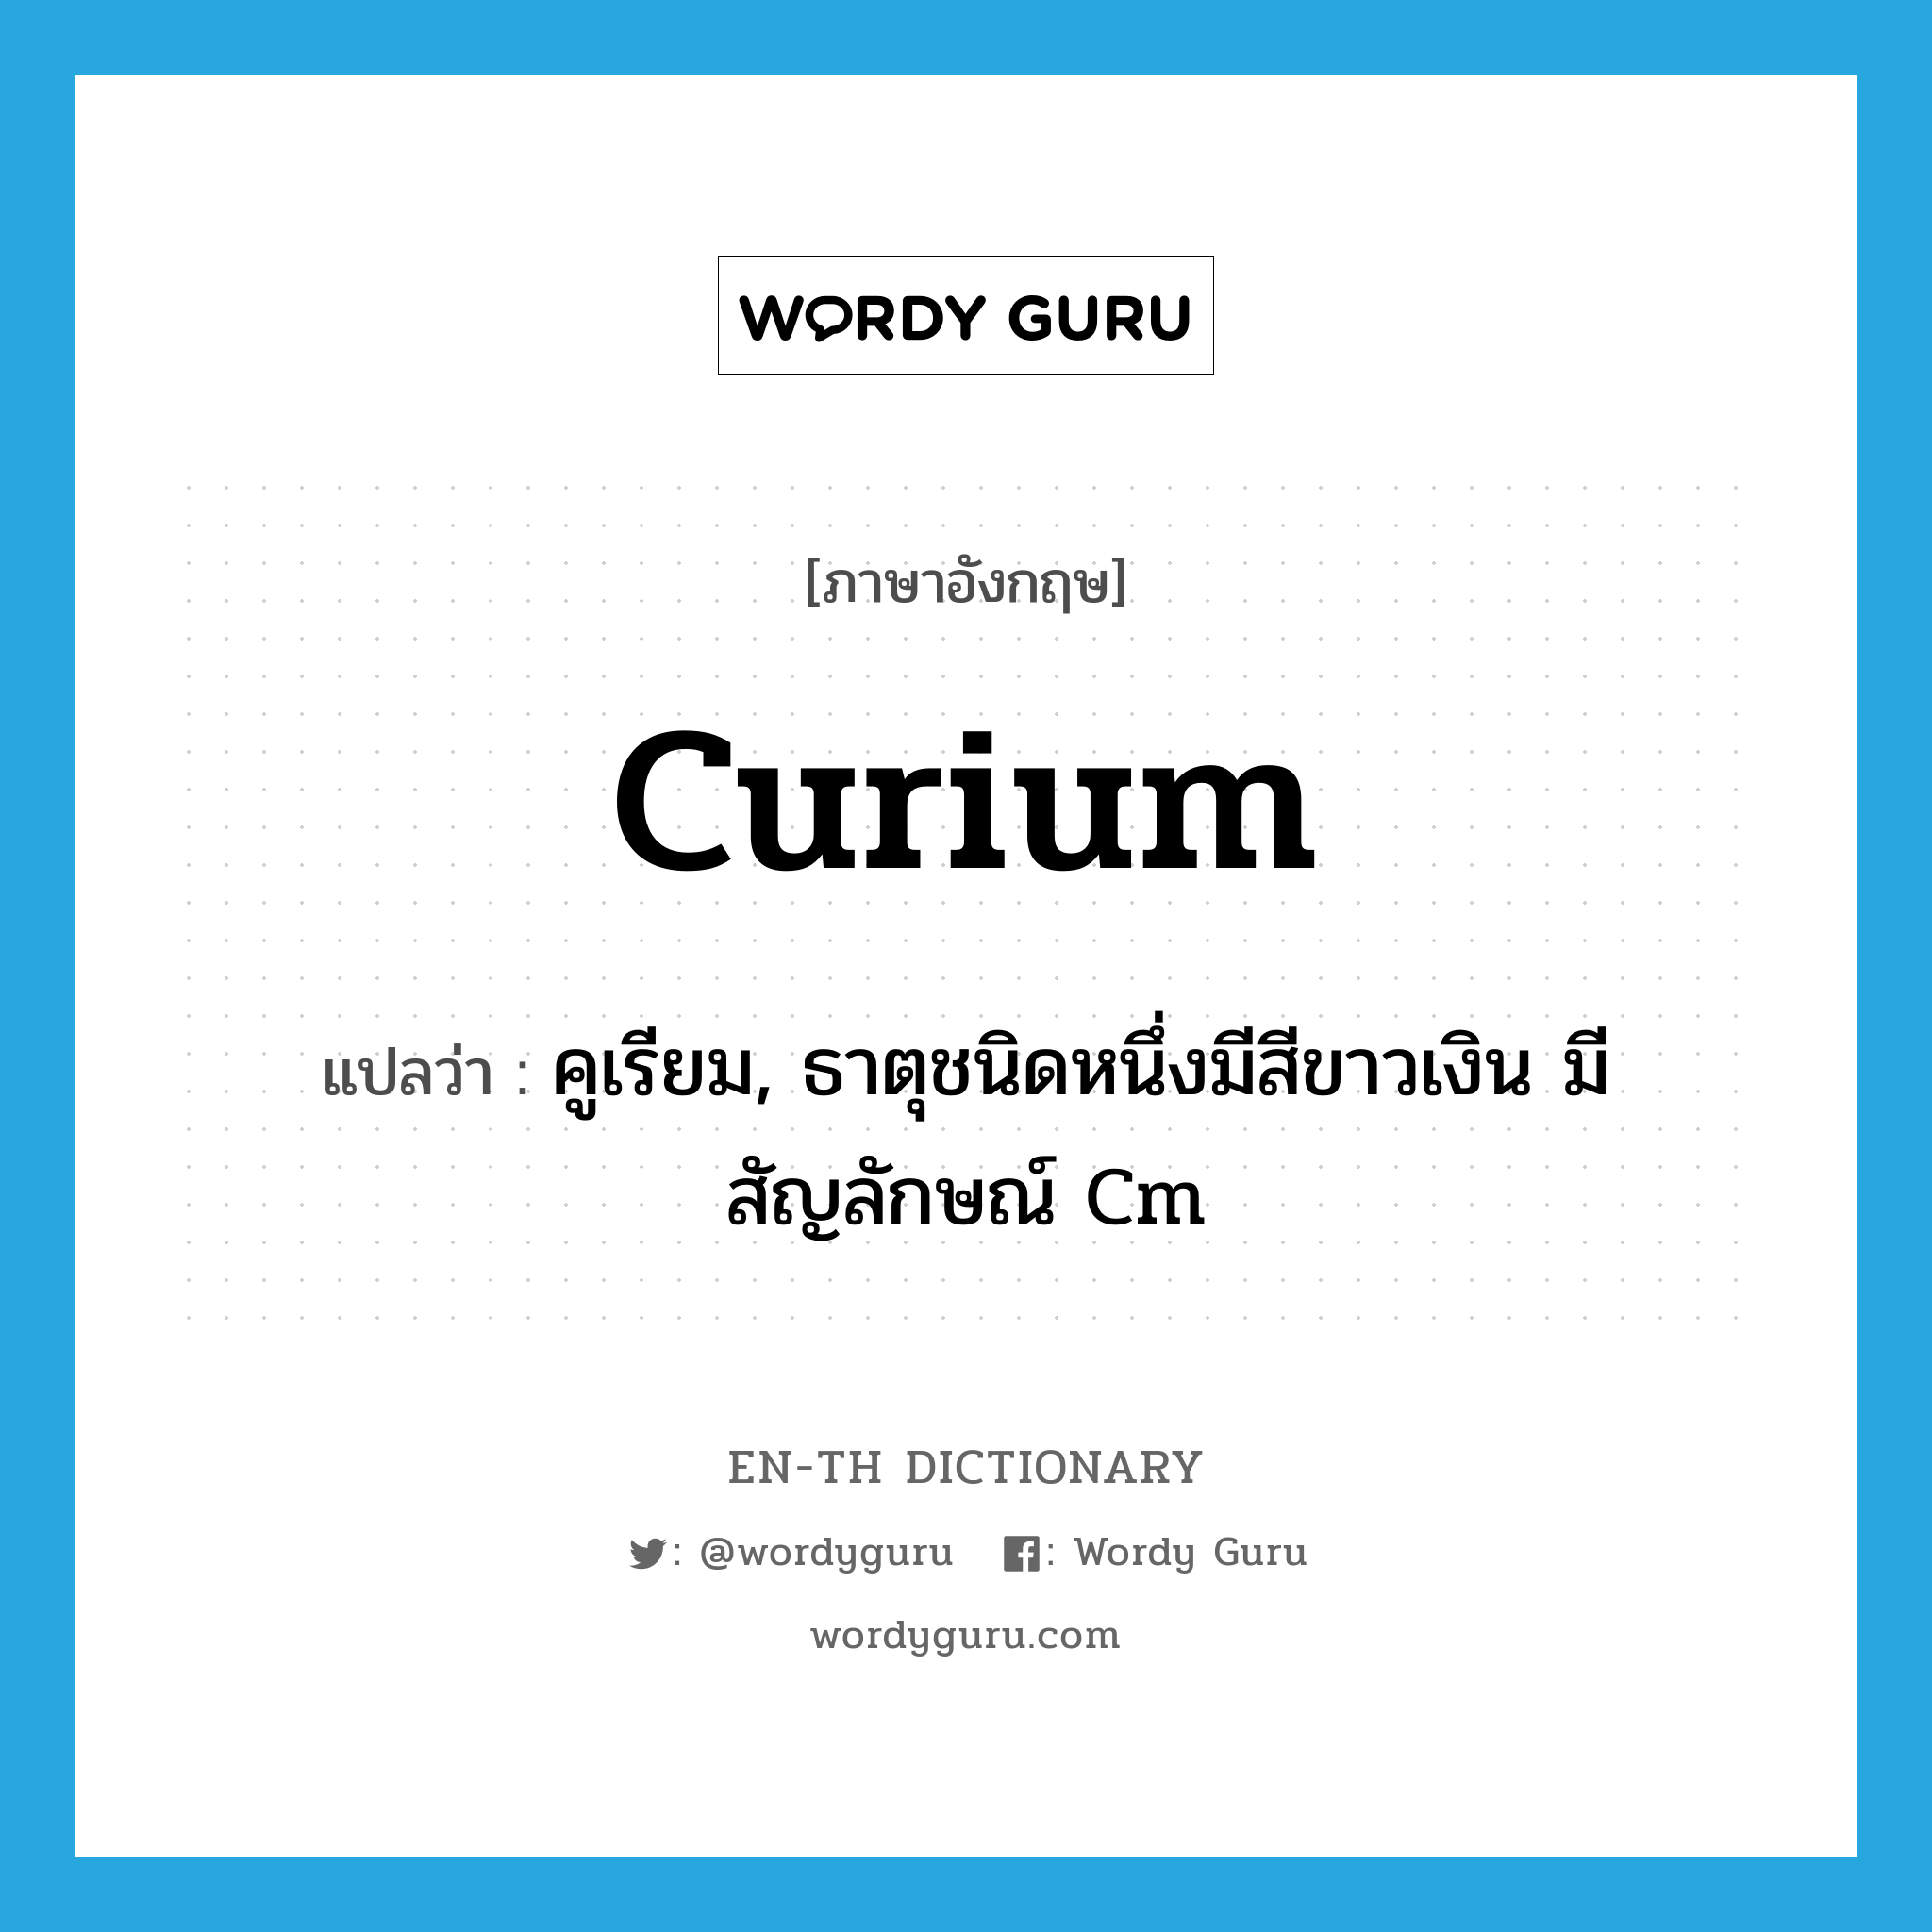 curium แปลว่า?, คำศัพท์ภาษาอังกฤษ curium แปลว่า คูเรียม, ธาตุชนิดหนึ่งมีสีขาวเงิน มีสัญลักษณ์ Cm ประเภท N หมวด N